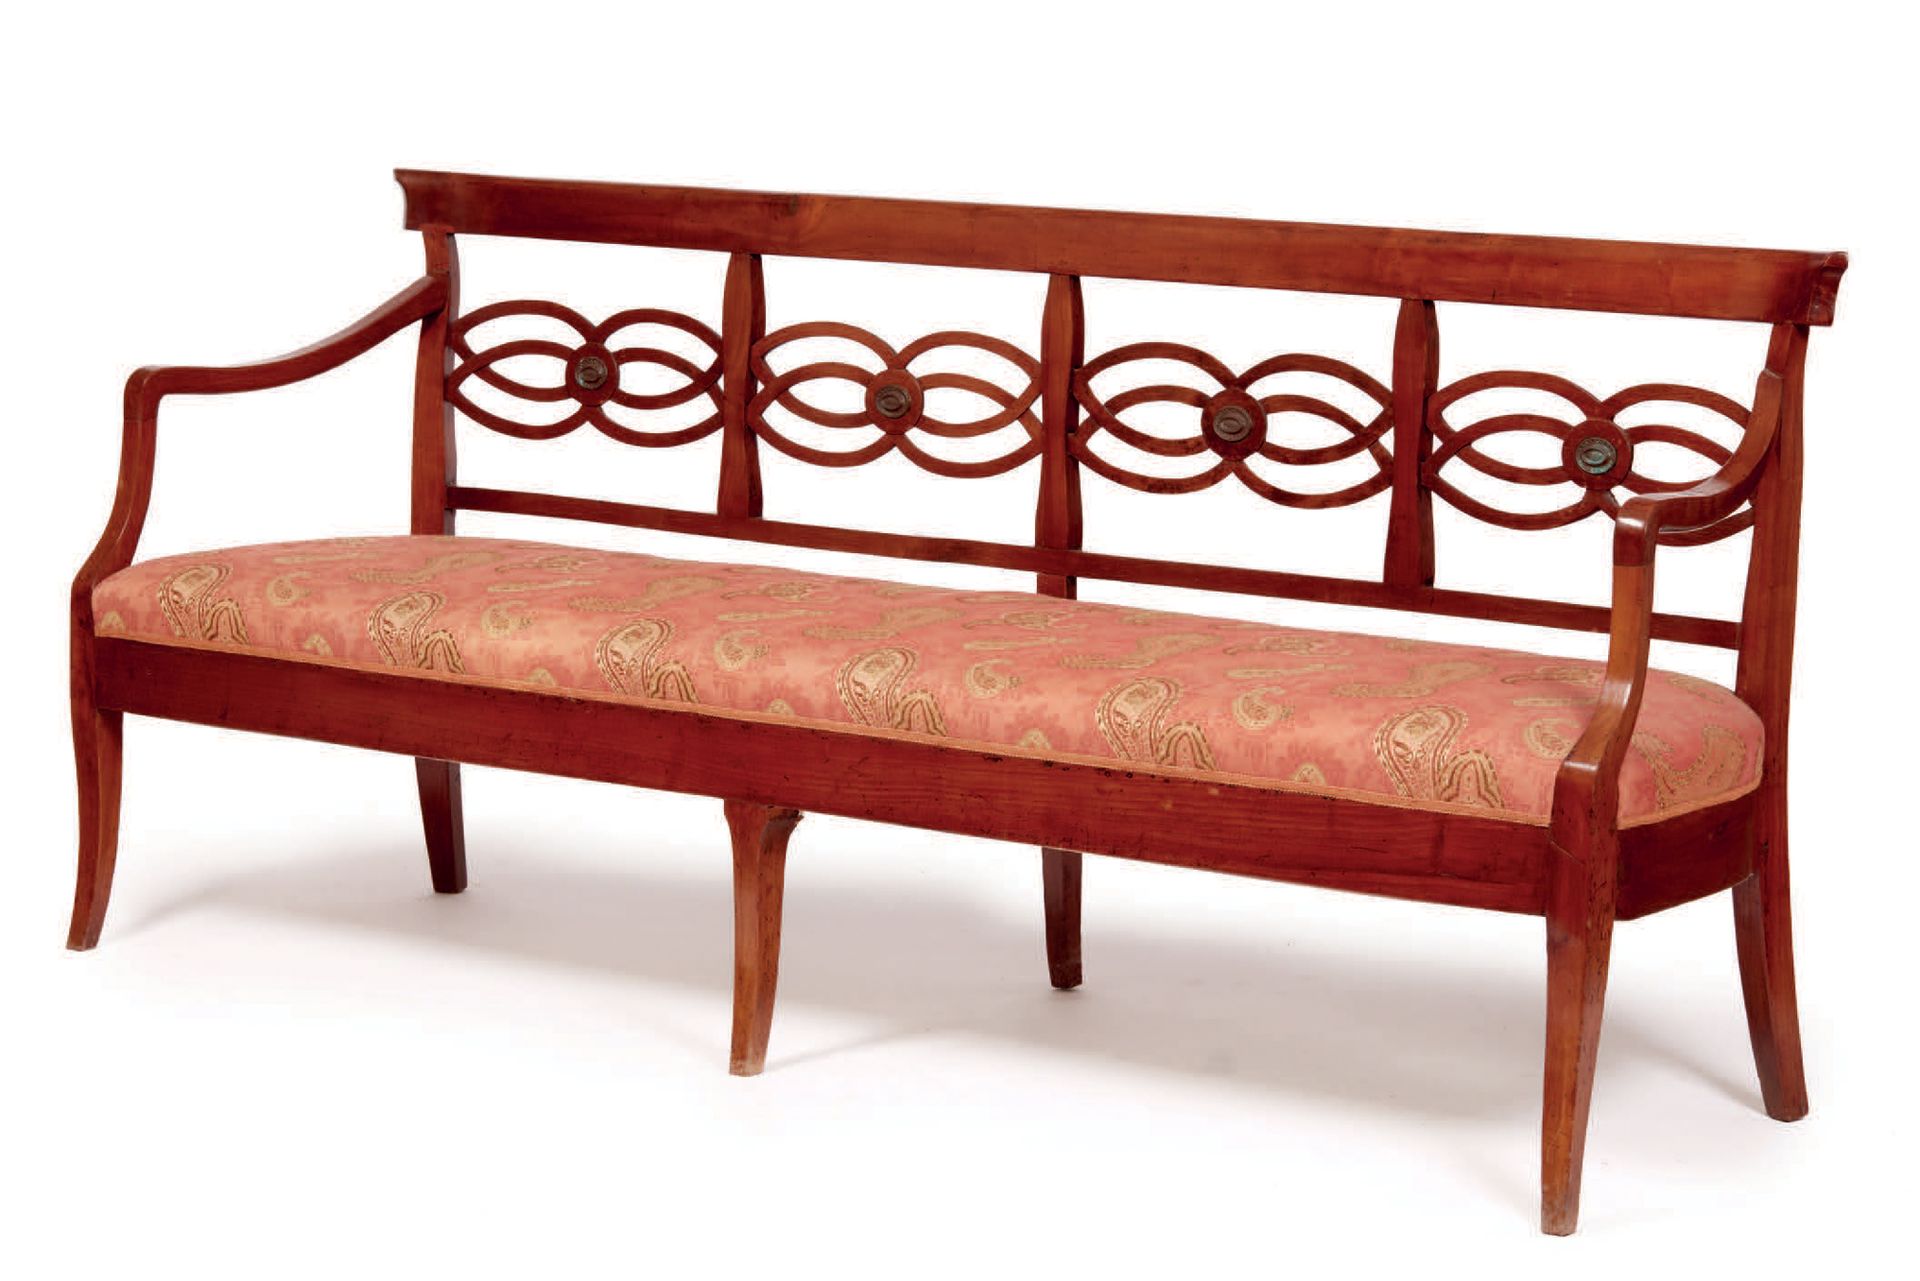 Null 
樱桃木沙发，开放式靠背，座椅采用红色织物装饰



樱桃木沙发
，带开放式靠背，座椅为红色织物装饰



高_89厘米，宽_216厘米，长_54厘米